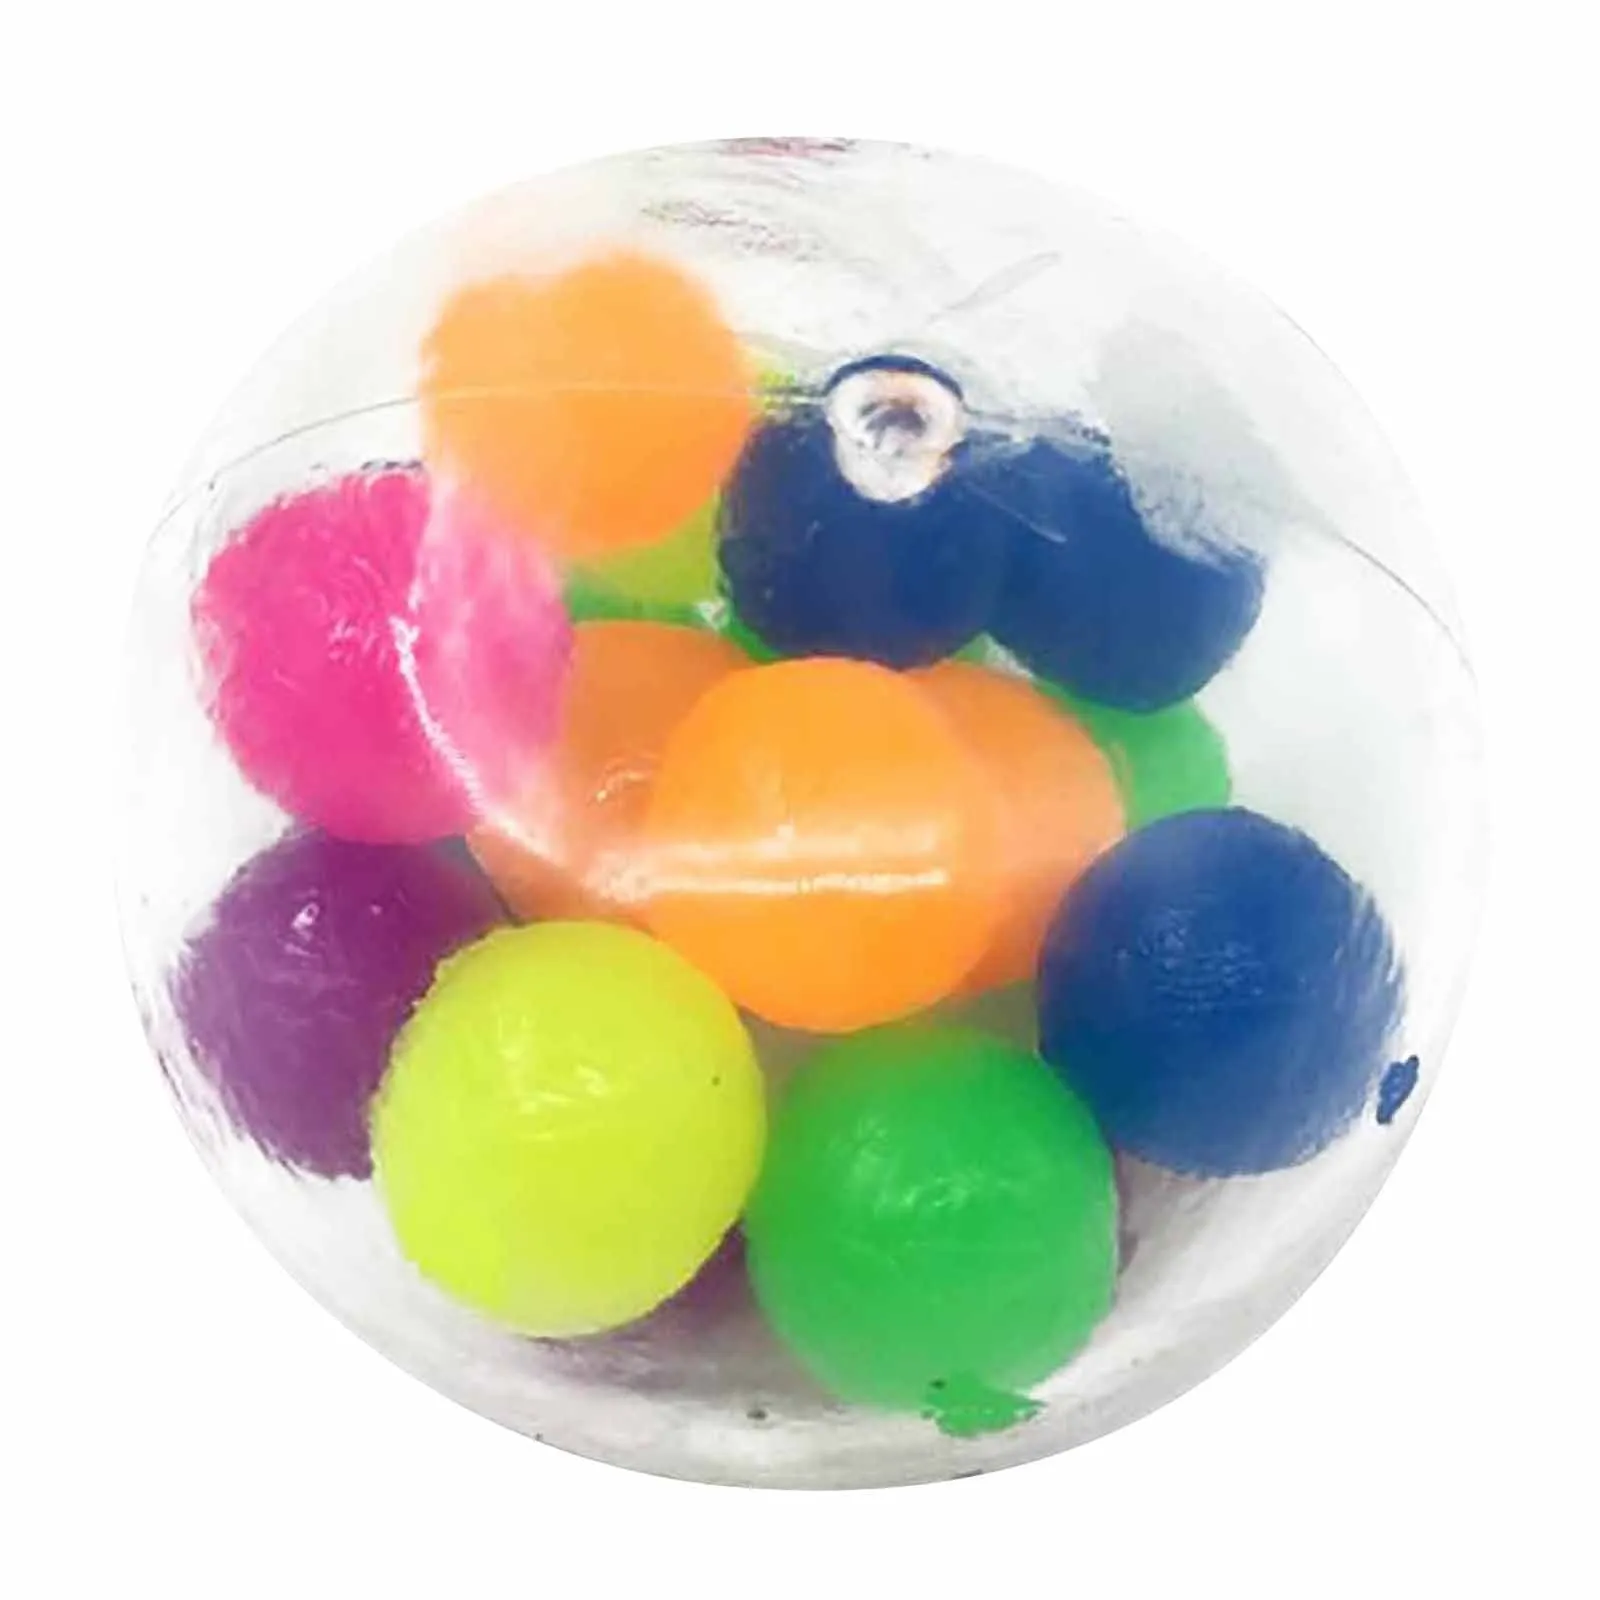 ألوان ملونة Office Office ضغط الكرة ضغط الكرة المسكن toy2mldecmbression تململ لعبة التخفيف من الإجهاد هدية DHL BS204534015